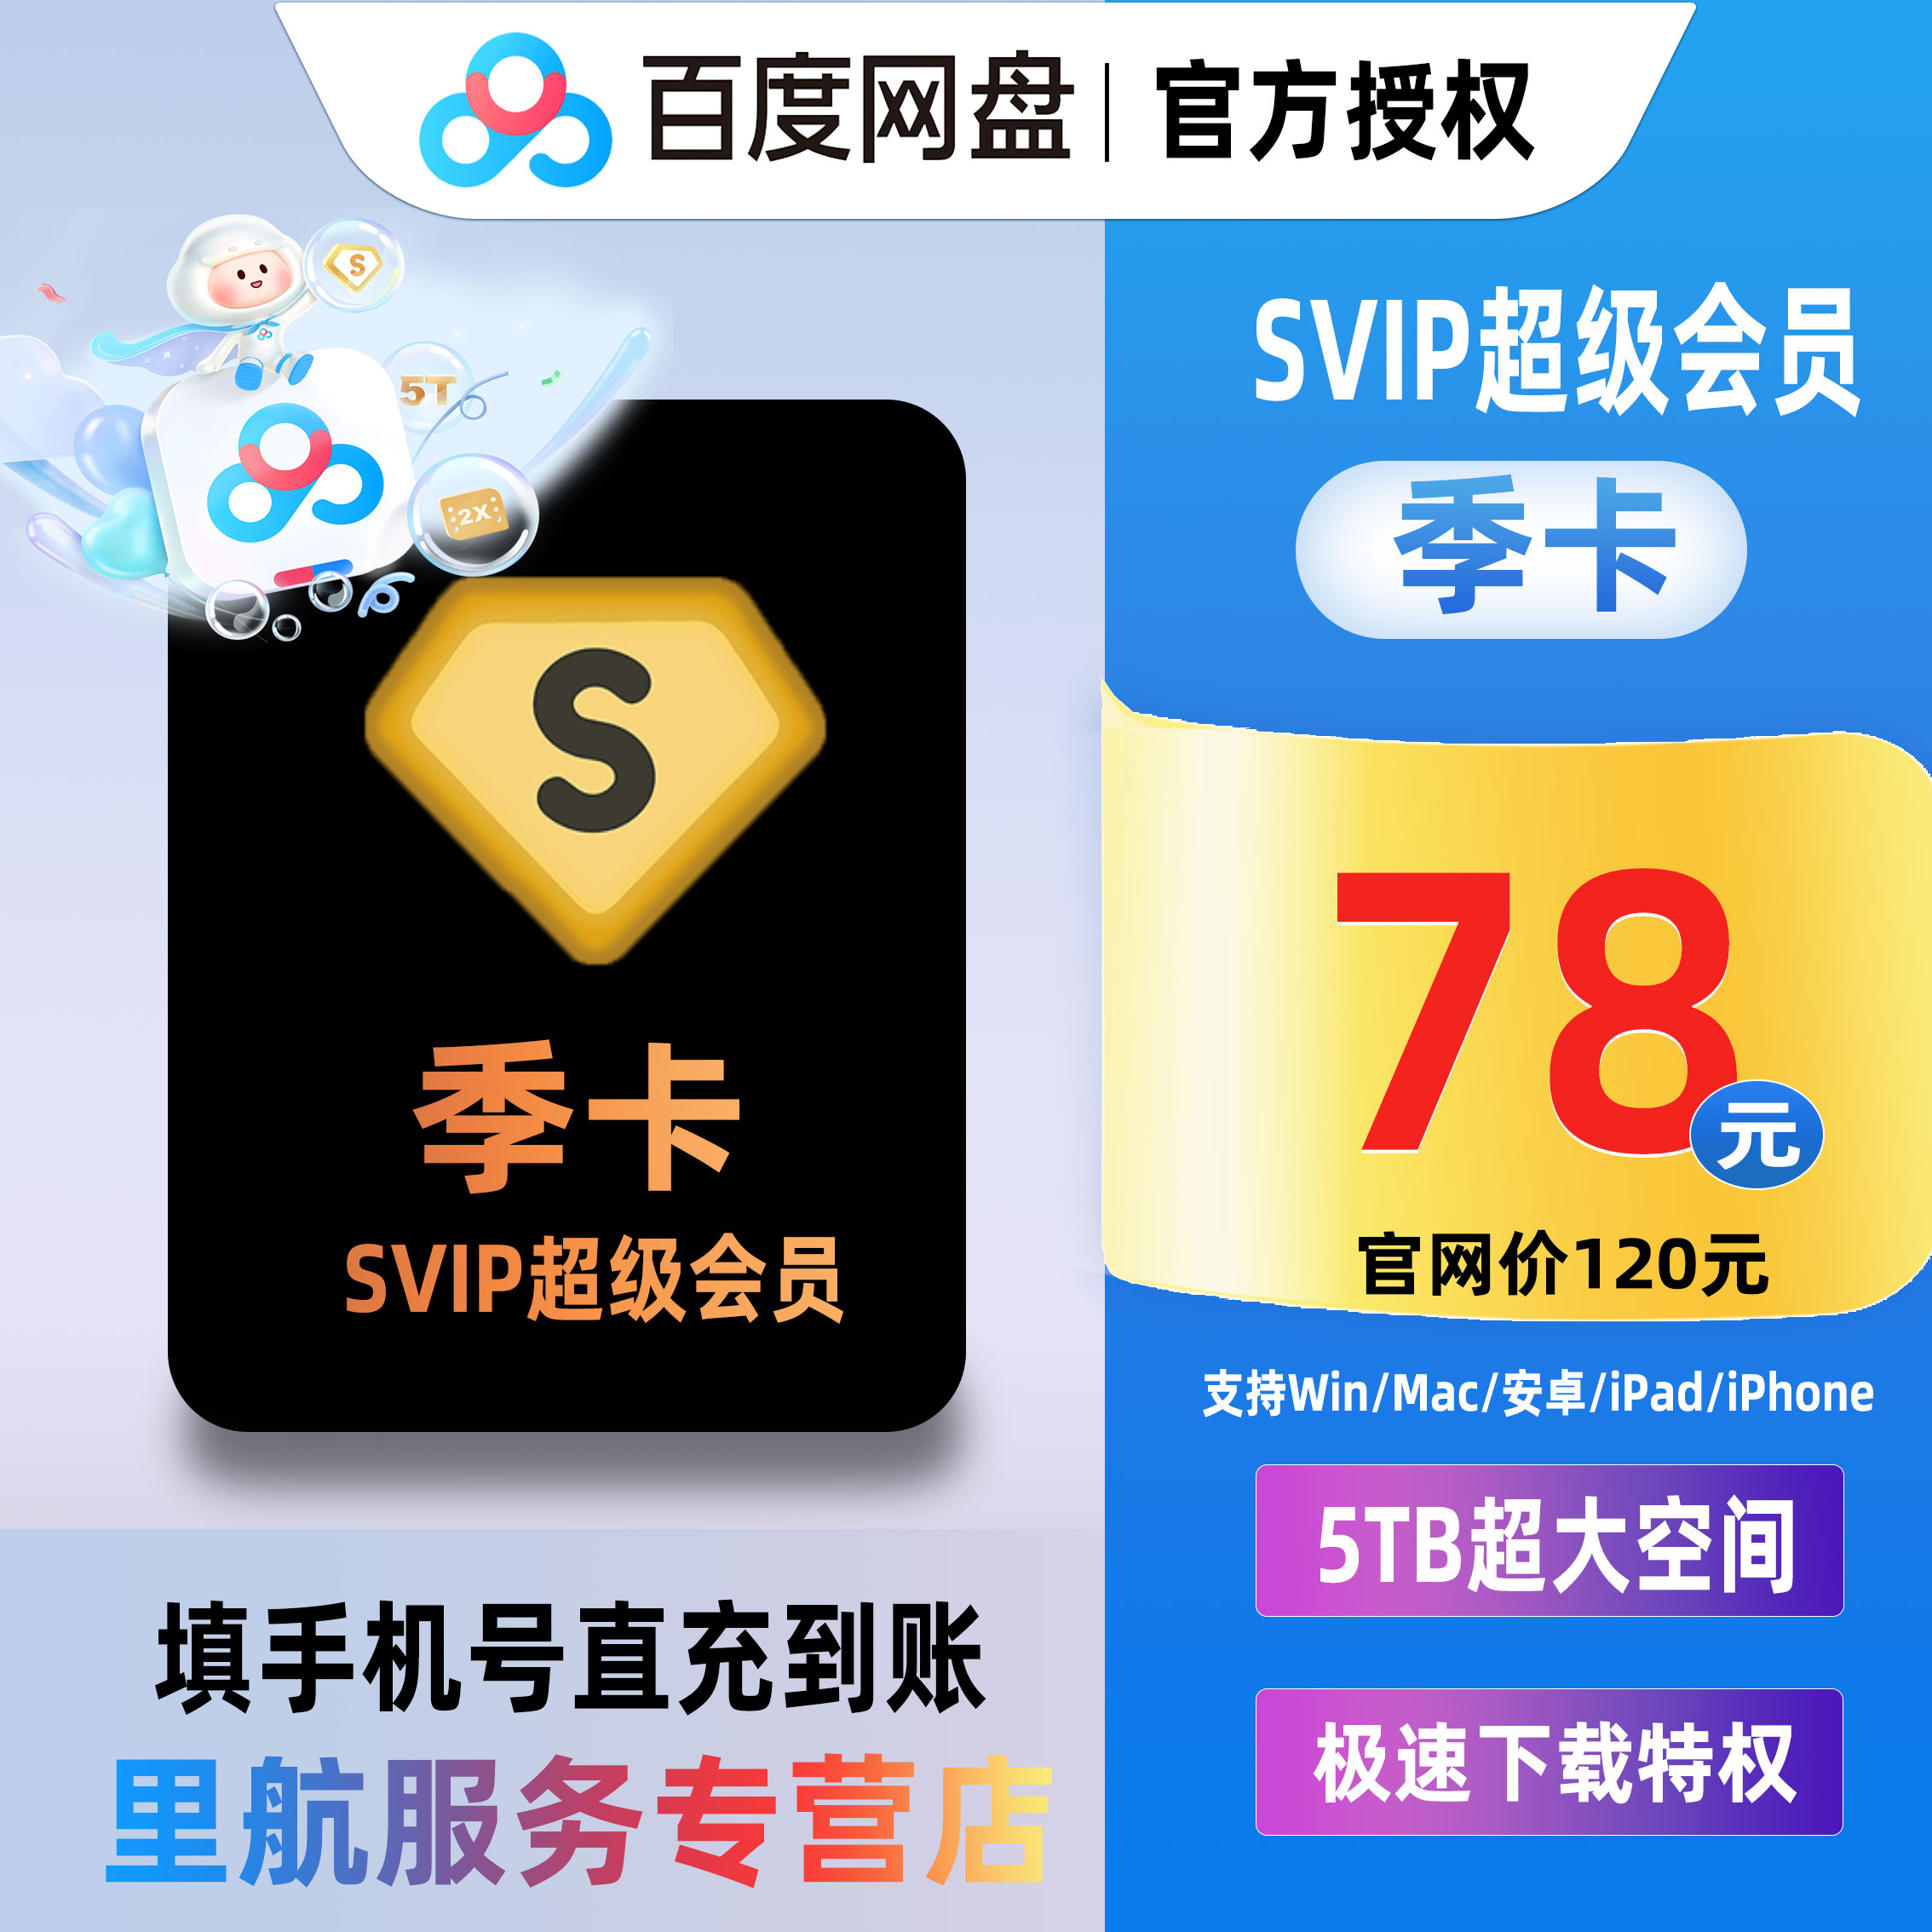 【正品直充】百度网盘超级会员SVIP3个月 1季度极速下载视频倍速